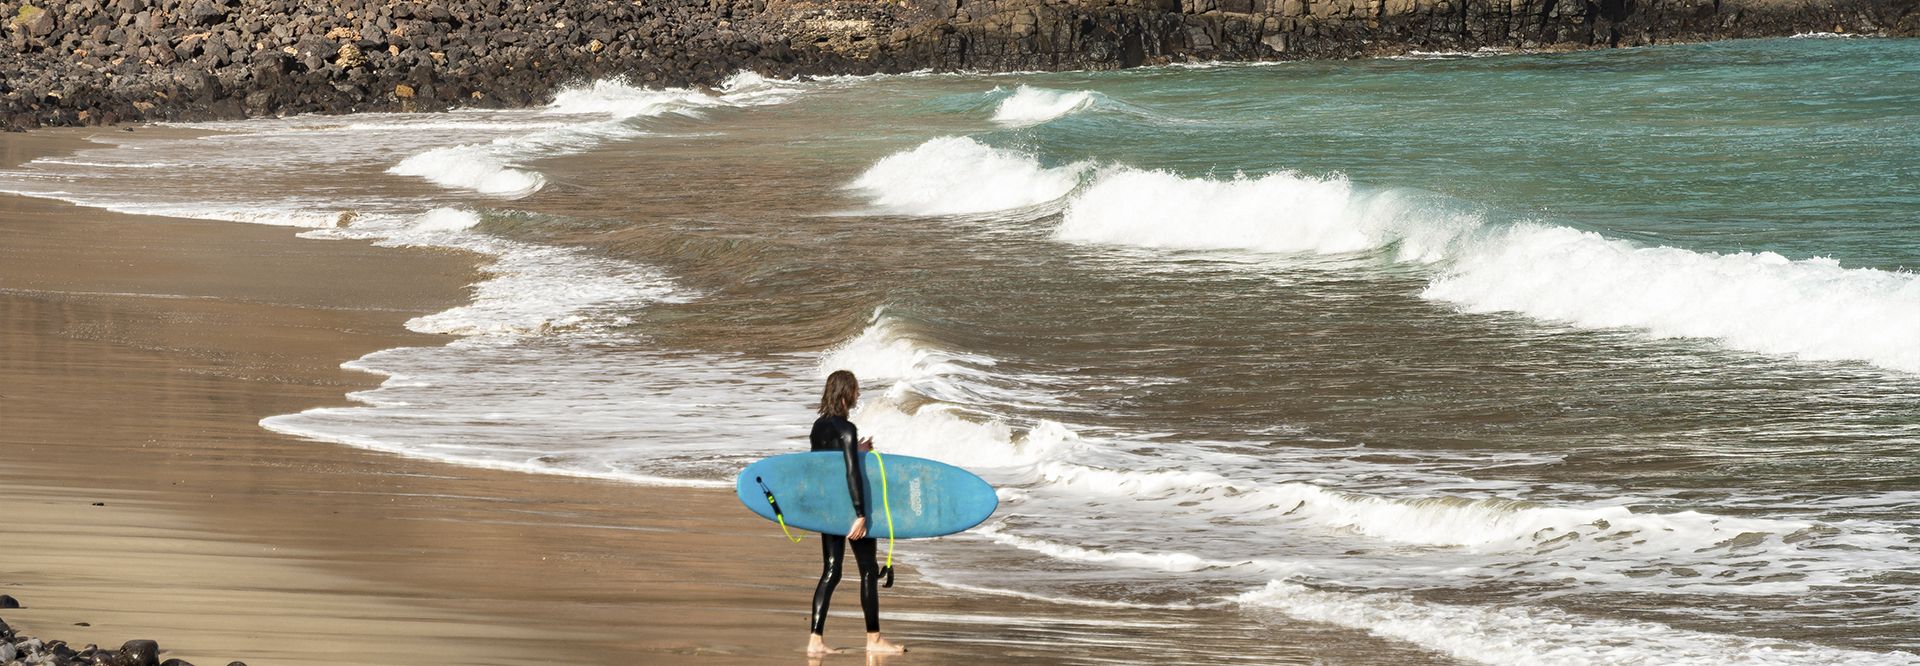 Surfeando el norte de Lanzarote. Guía de turismo y planazos.